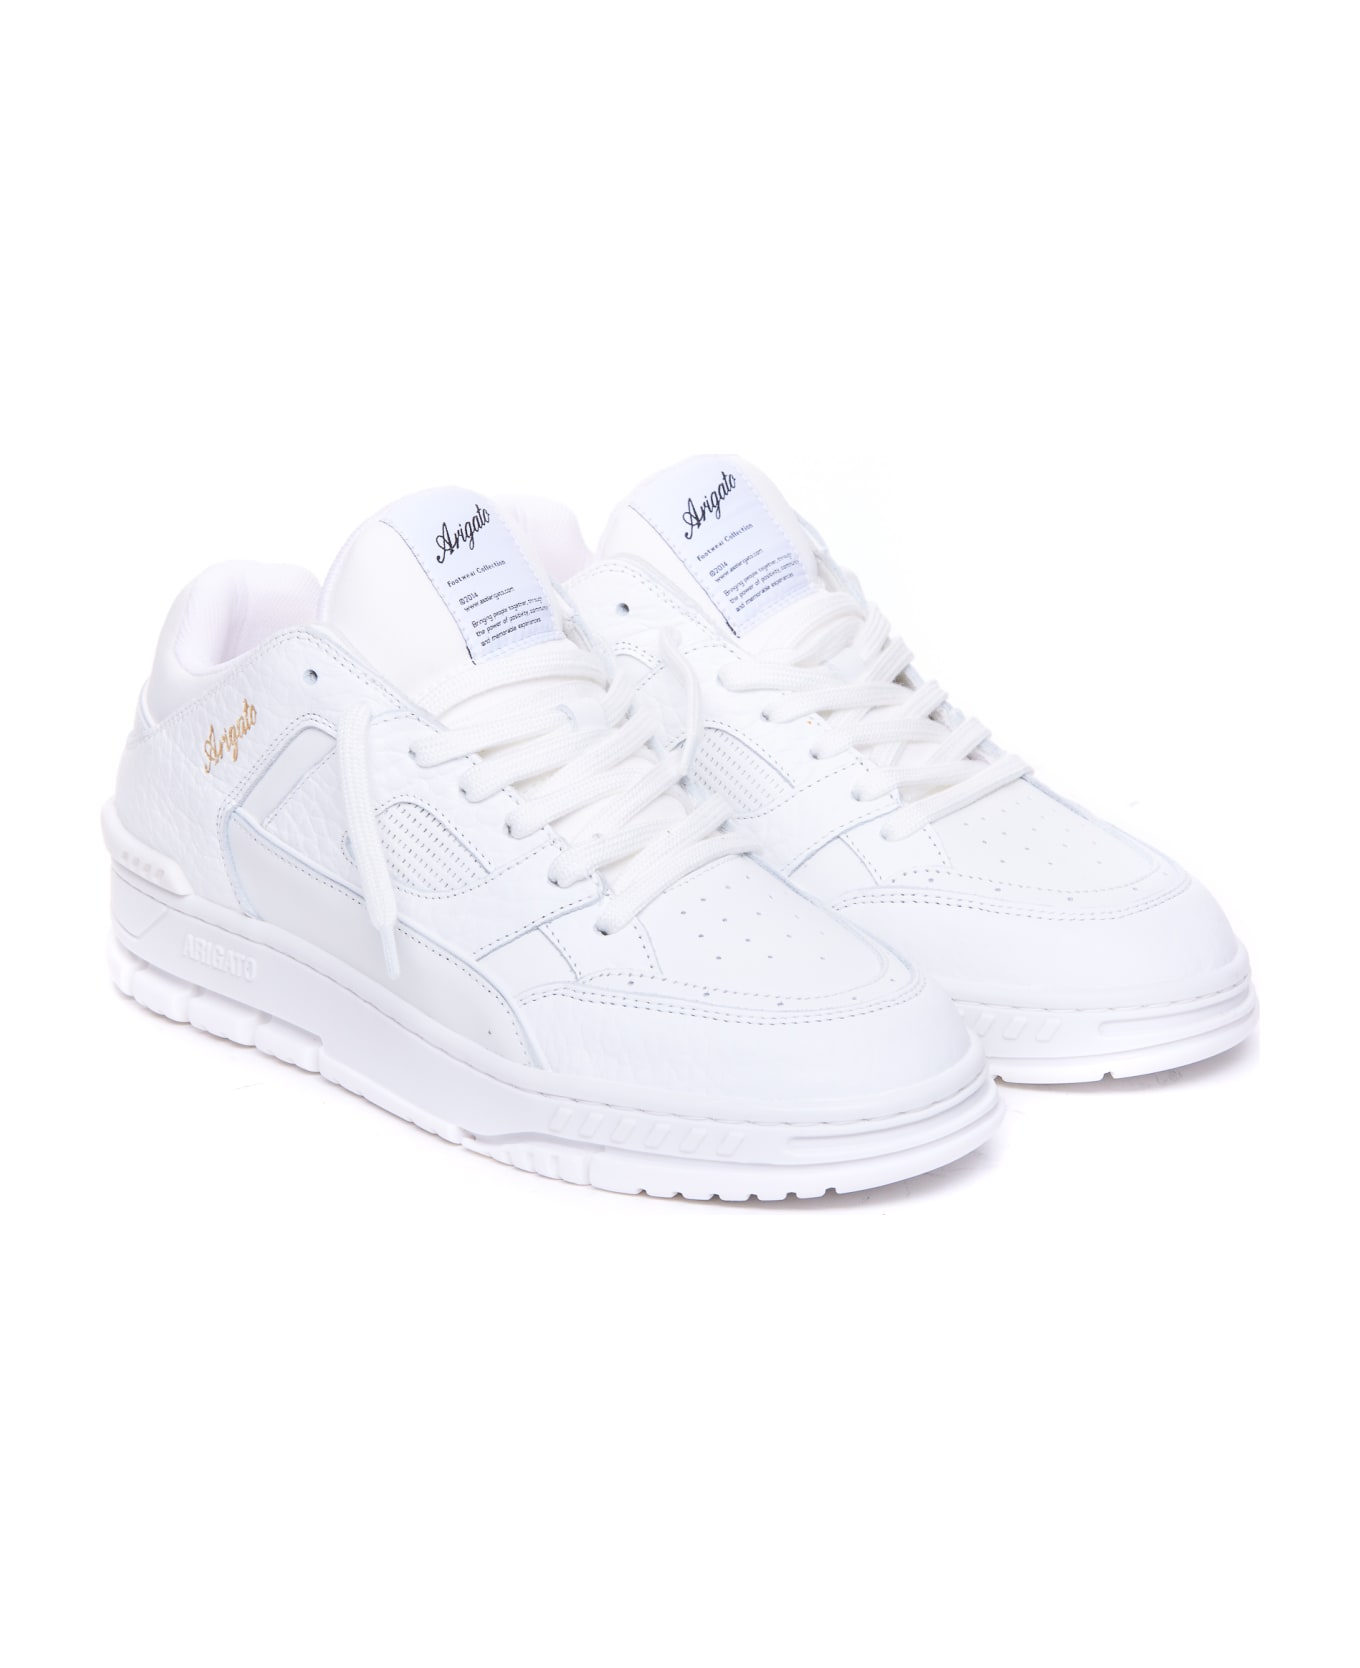 Axel Arigato Area Lo Sneakers - White